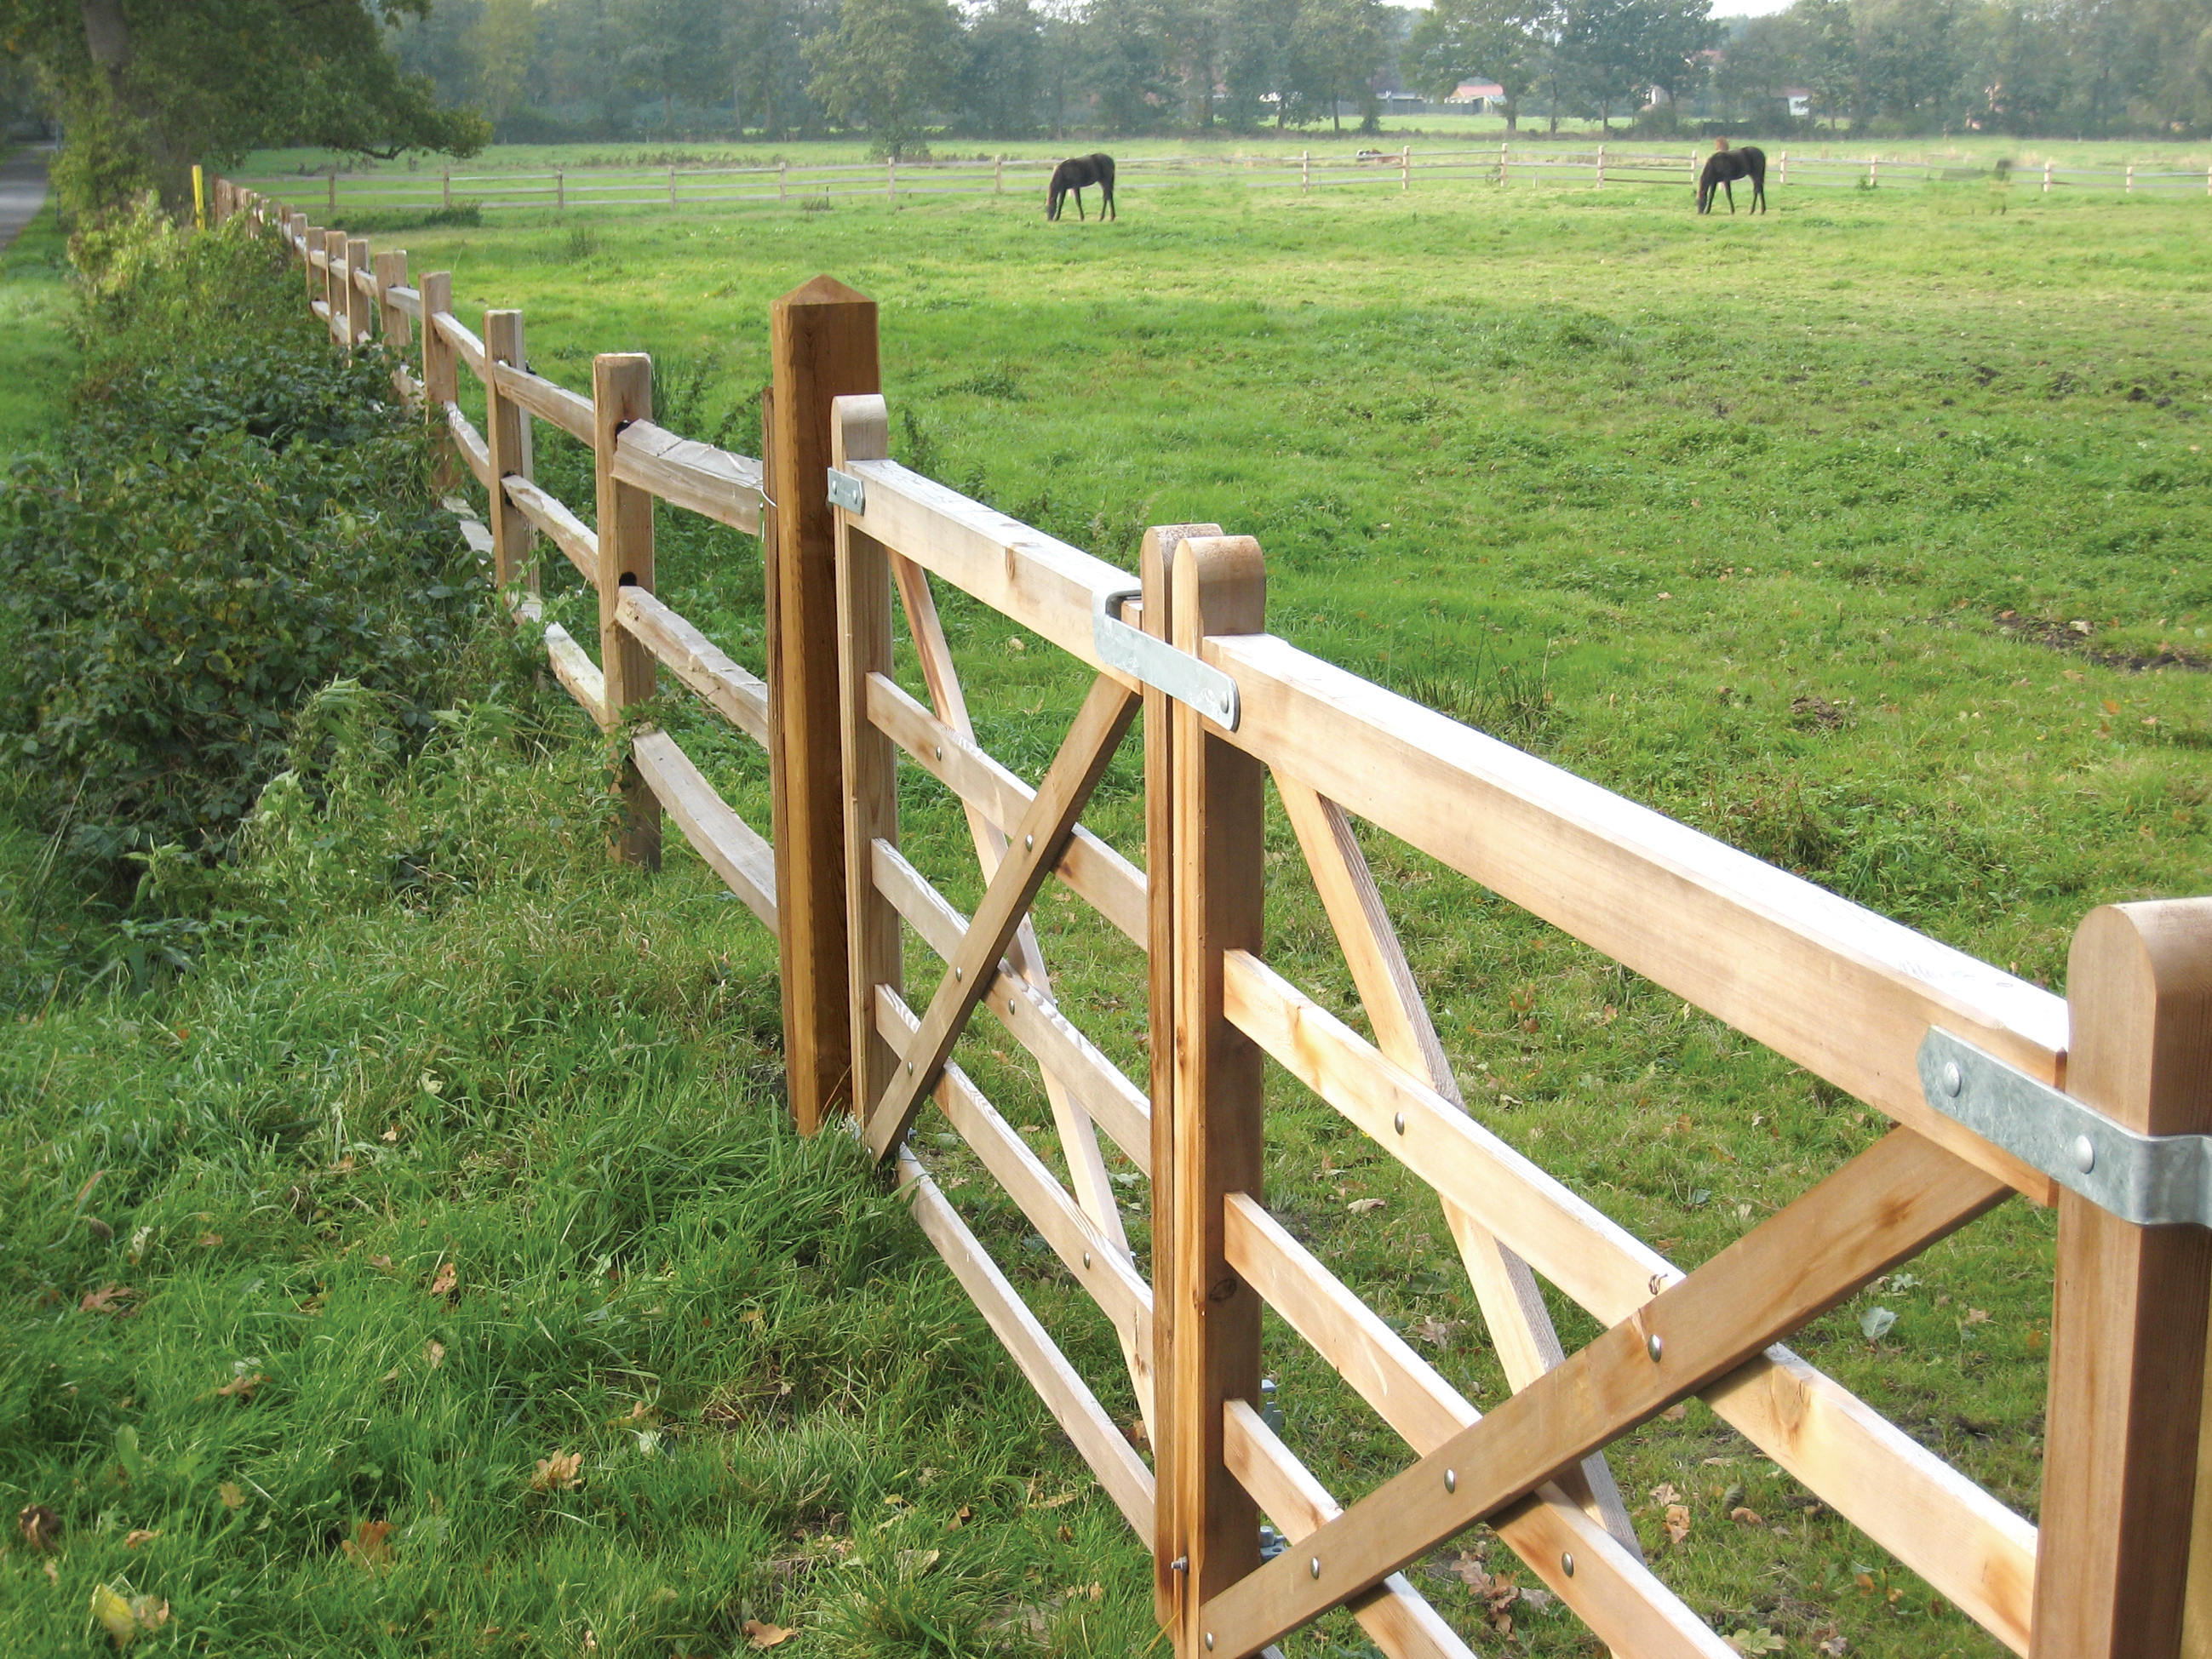 Twee houten poorten en een rustiek cederhouten paardenhek vormen een paardenweide waar twee paarden grazen.